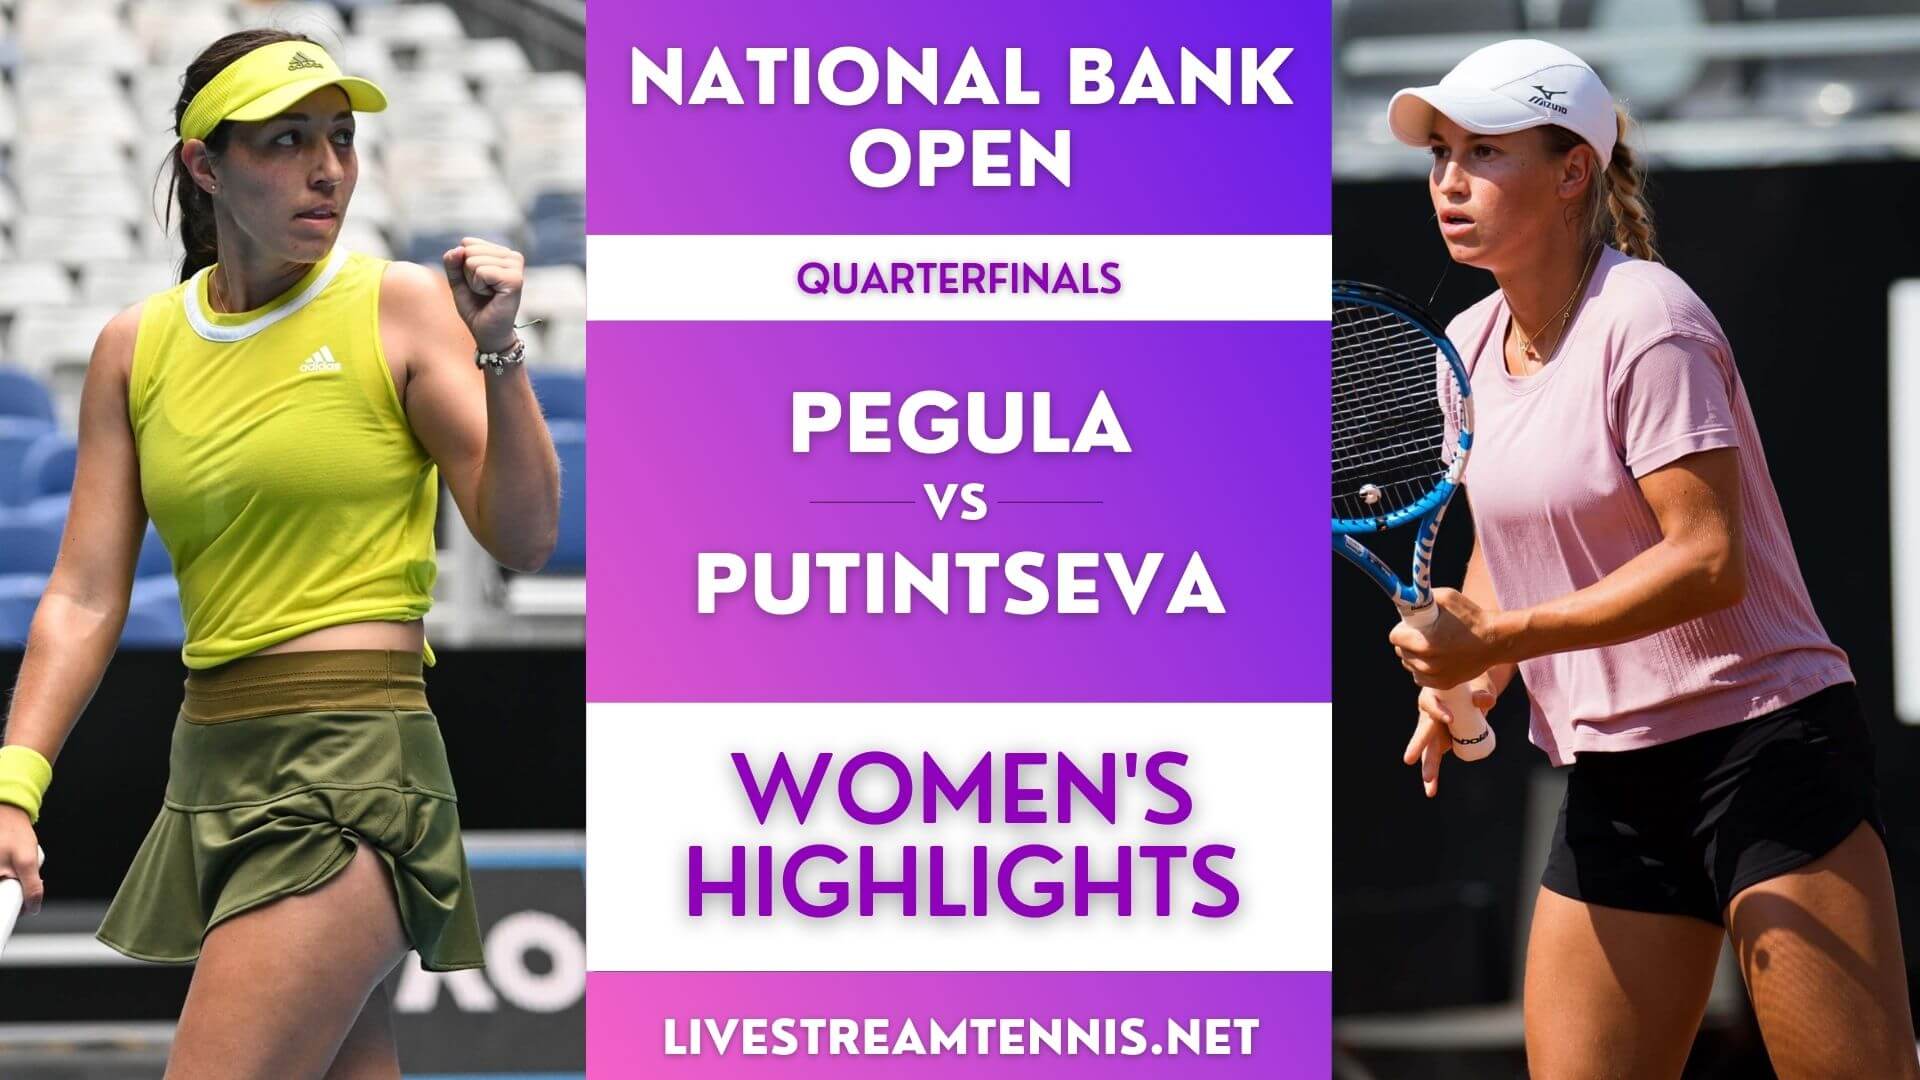 National Bank Open WTA Quarterfinal 4 Highlights 2022